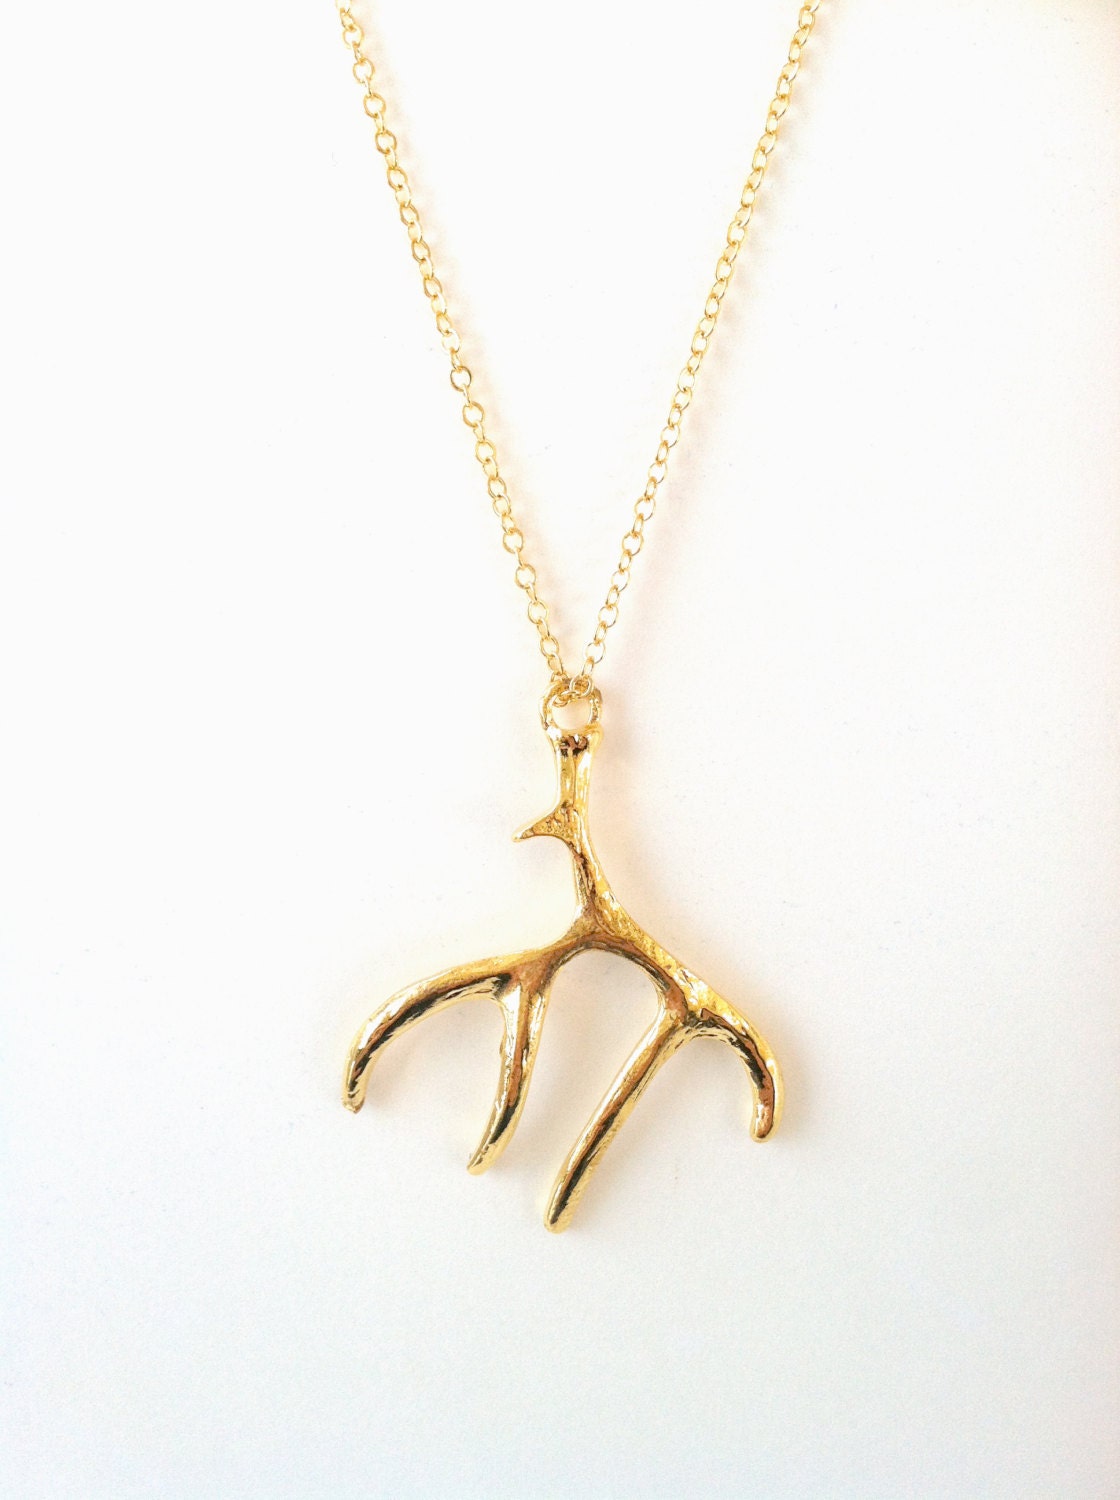 N11301 - Gold long deer antler pendant necklace